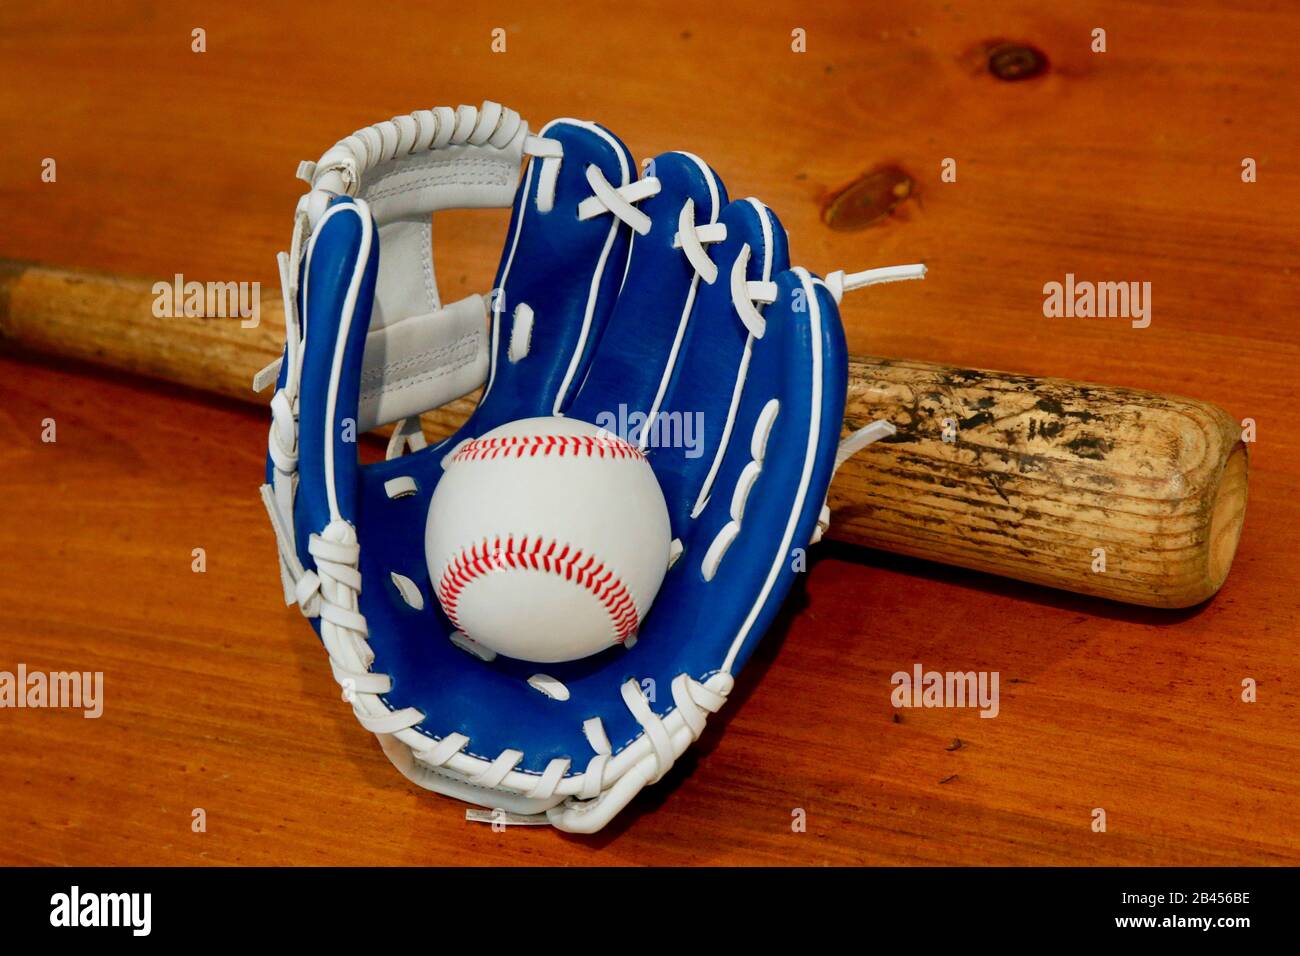 Baseball, glove & bat. Stock Photo